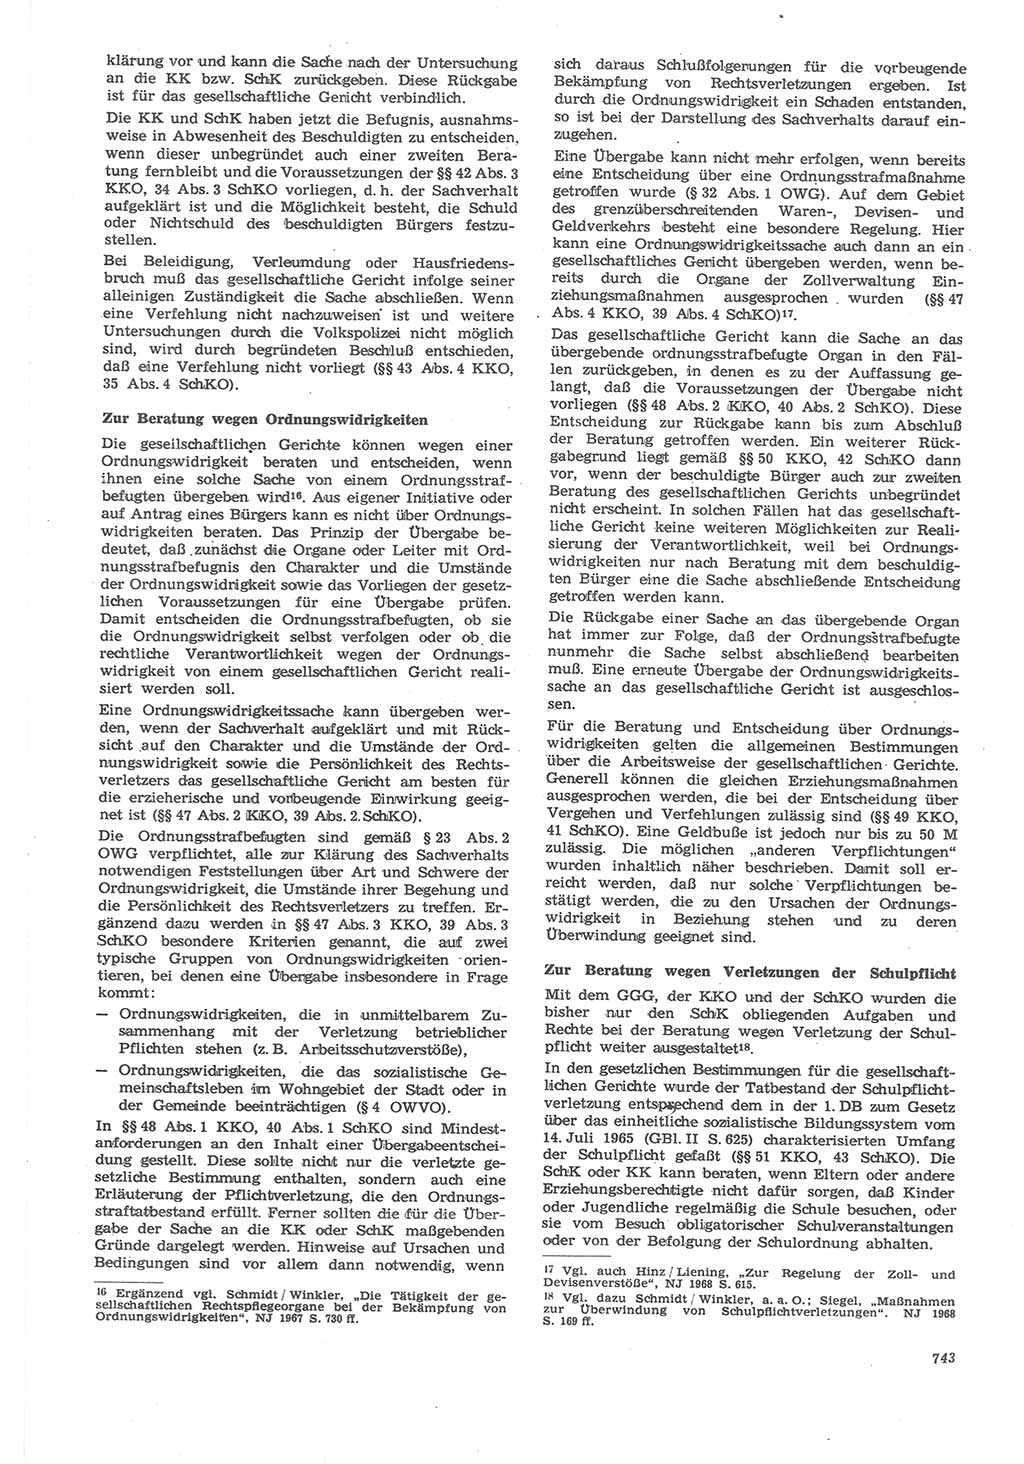 Neue Justiz (NJ), Zeitschrift für Recht und Rechtswissenschaft [Deutsche Demokratische Republik (DDR)], 22. Jahrgang 1968, Seite 743 (NJ DDR 1968, S. 743)